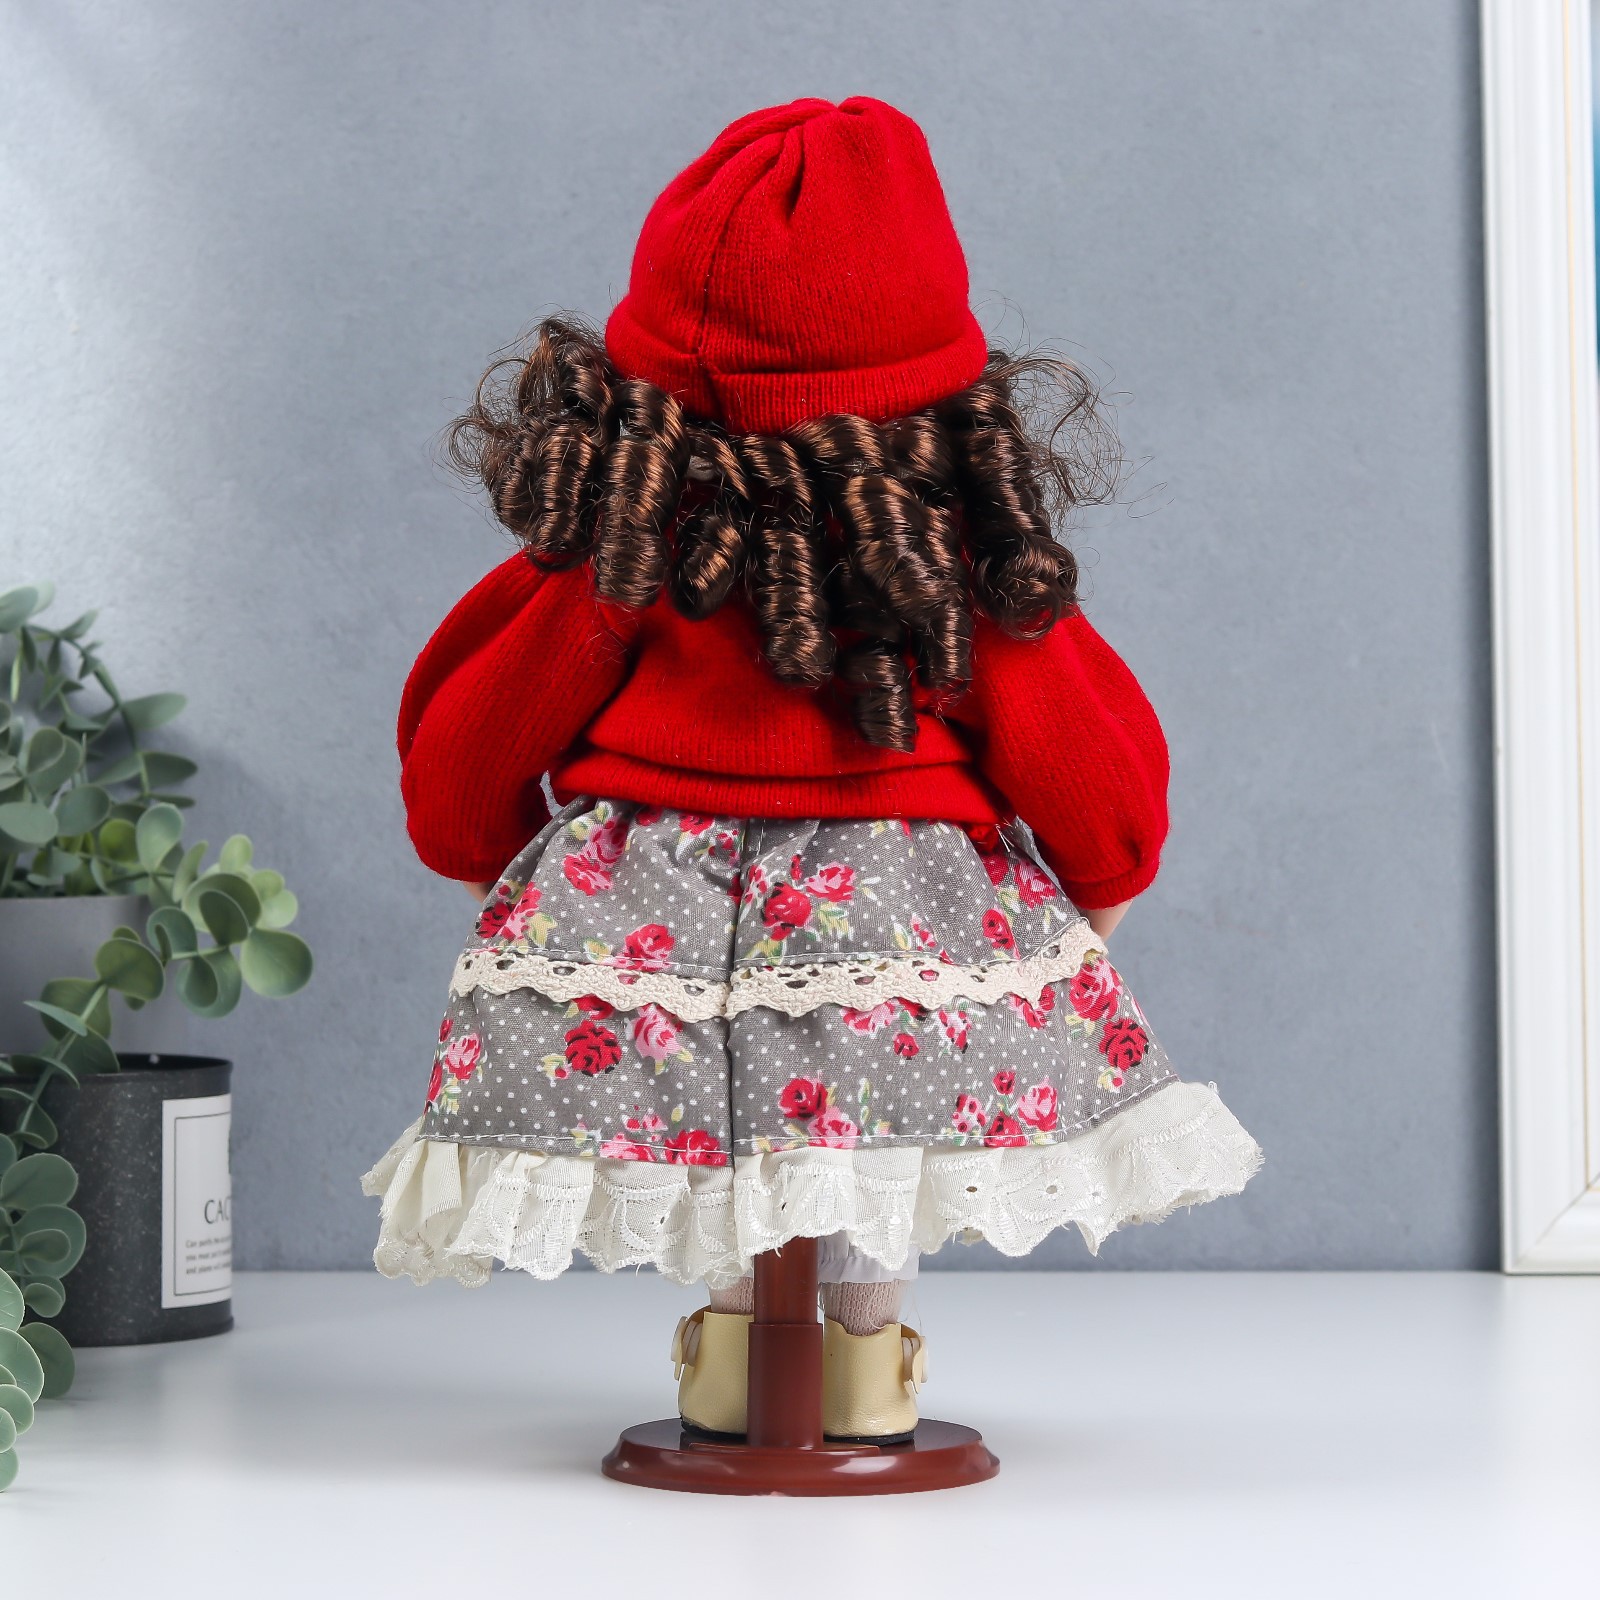 Кукла коллекционная Зимнее волшебство керамика «Лиза в платье с цветами в красном жакете» 30 см - фото 4